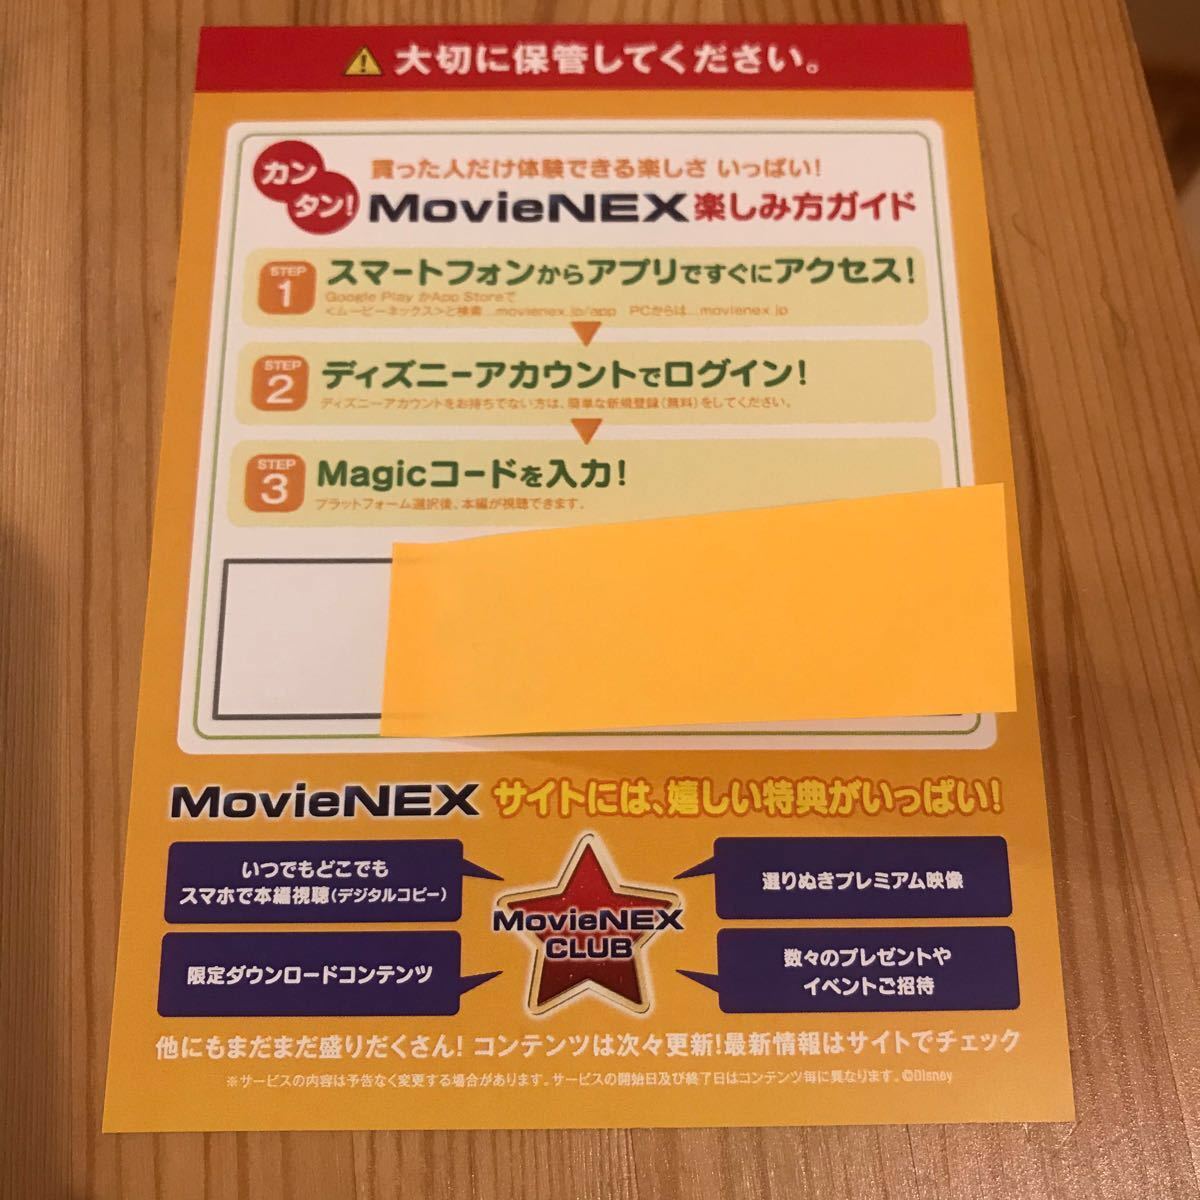 トイストーリー4 ブルーレイ、純正ケース、限定アウターケース、MOVIENEXマジックコード付き 日本正規版 新品未再生 